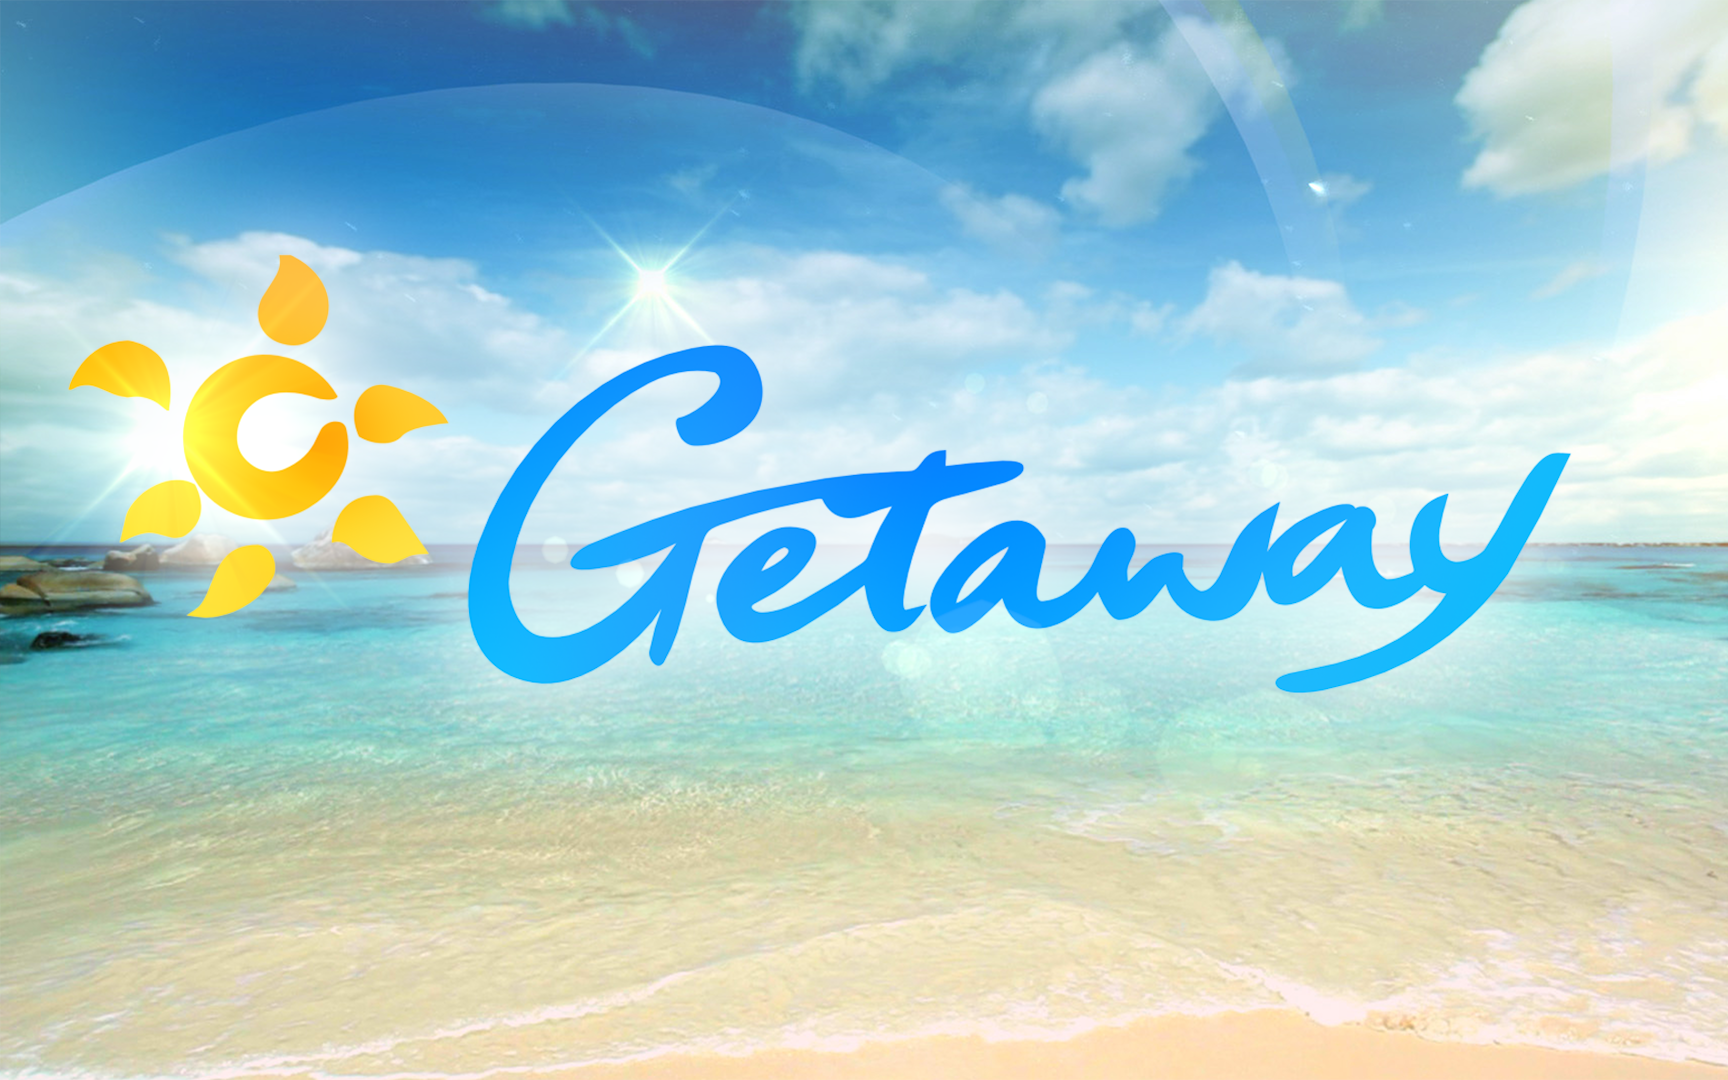 Getaway Holidays logo. Dream destination. Wonderful holidays